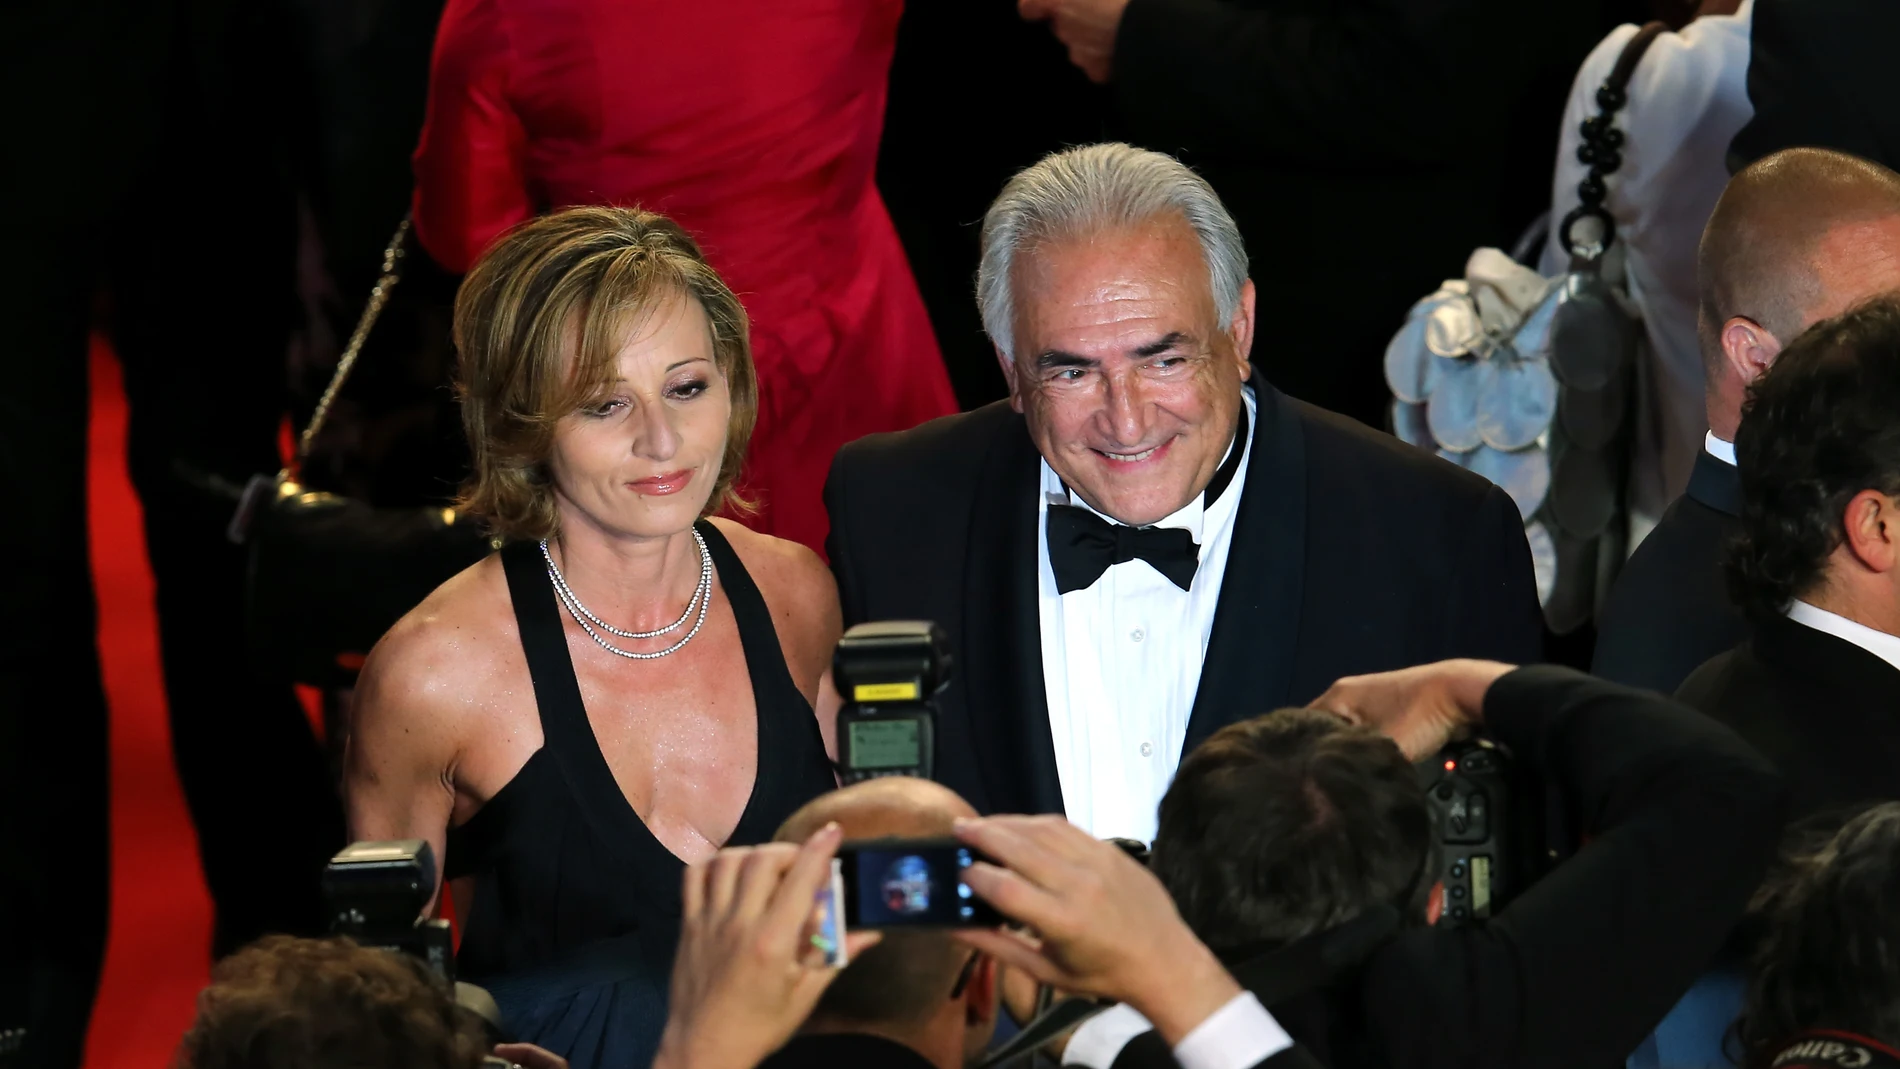 Dominique Strauss-Kahn en una foto de archivo en Cannes, Francia, en 2013